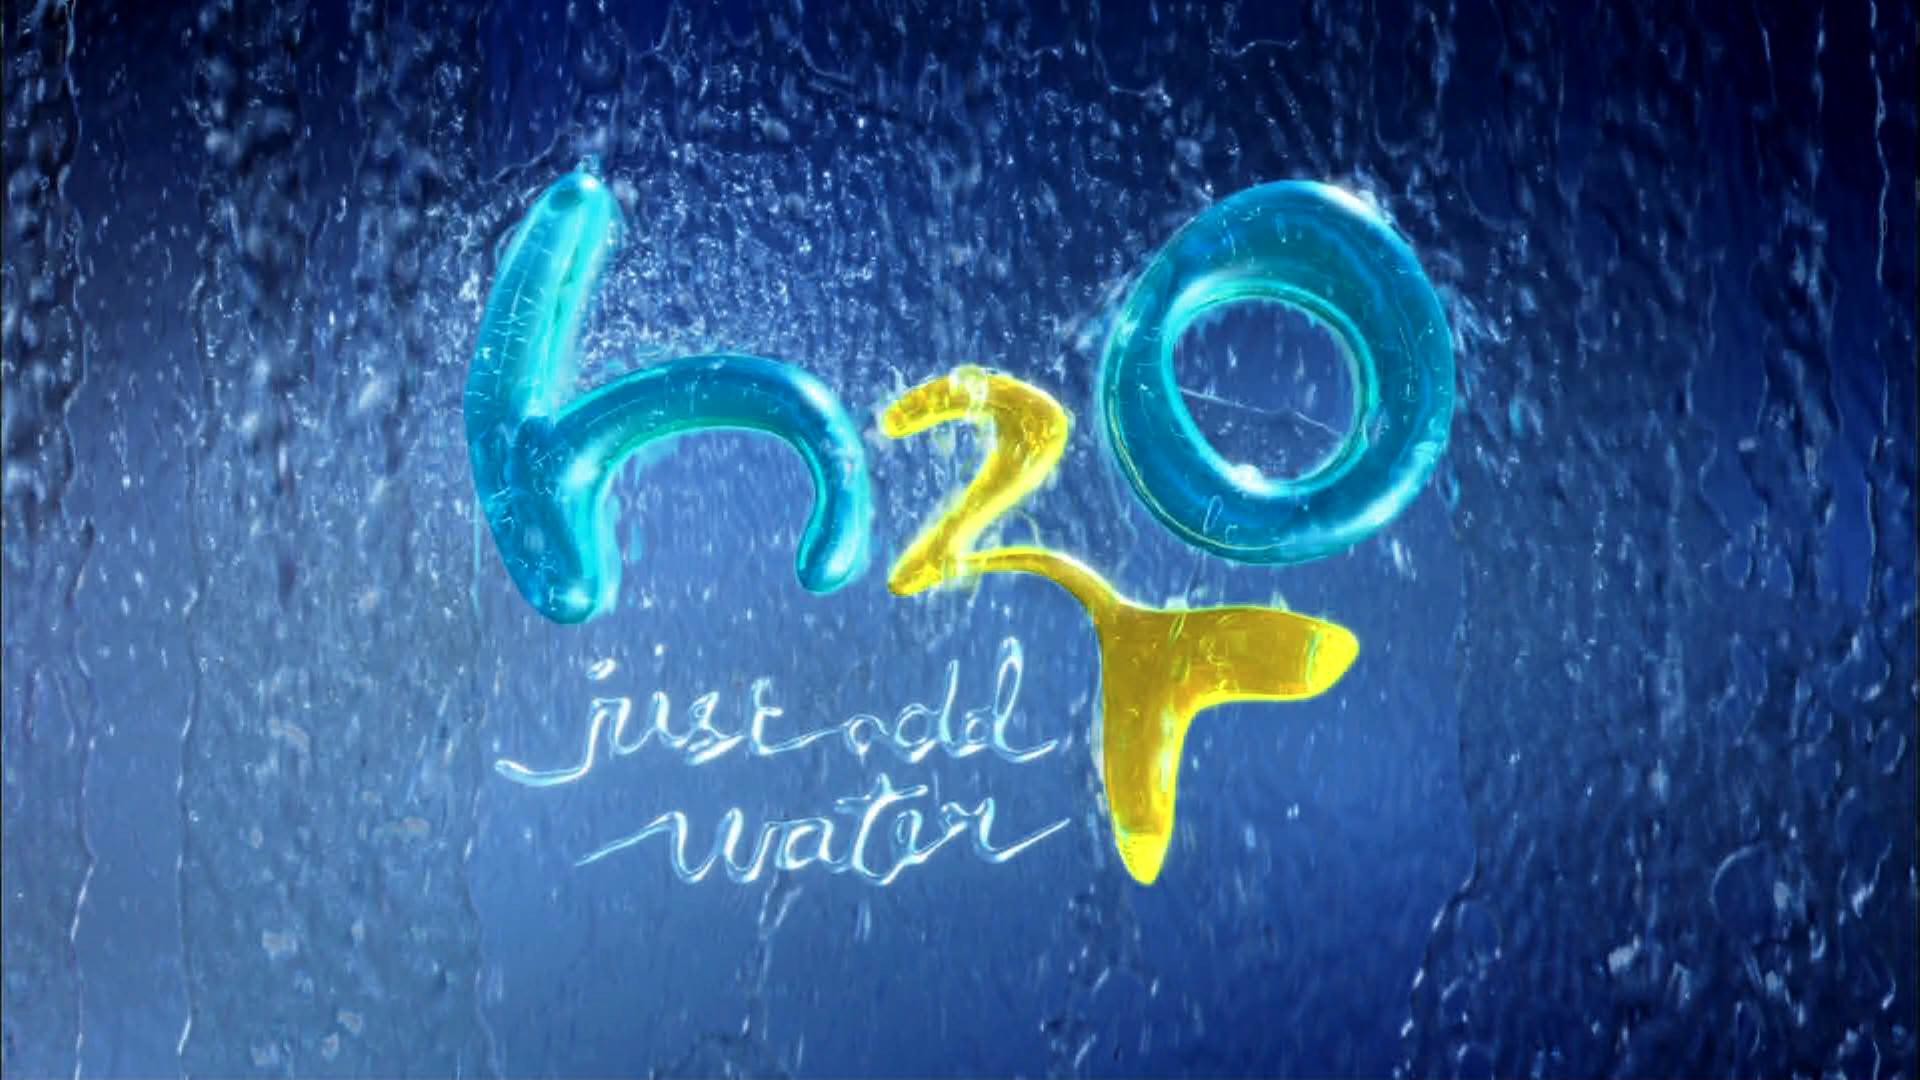 Со 2 аш 2 о. Аш 2 о 2. H2o просто Добавь воды надпись. Н2о просто Добавь воды логотип.